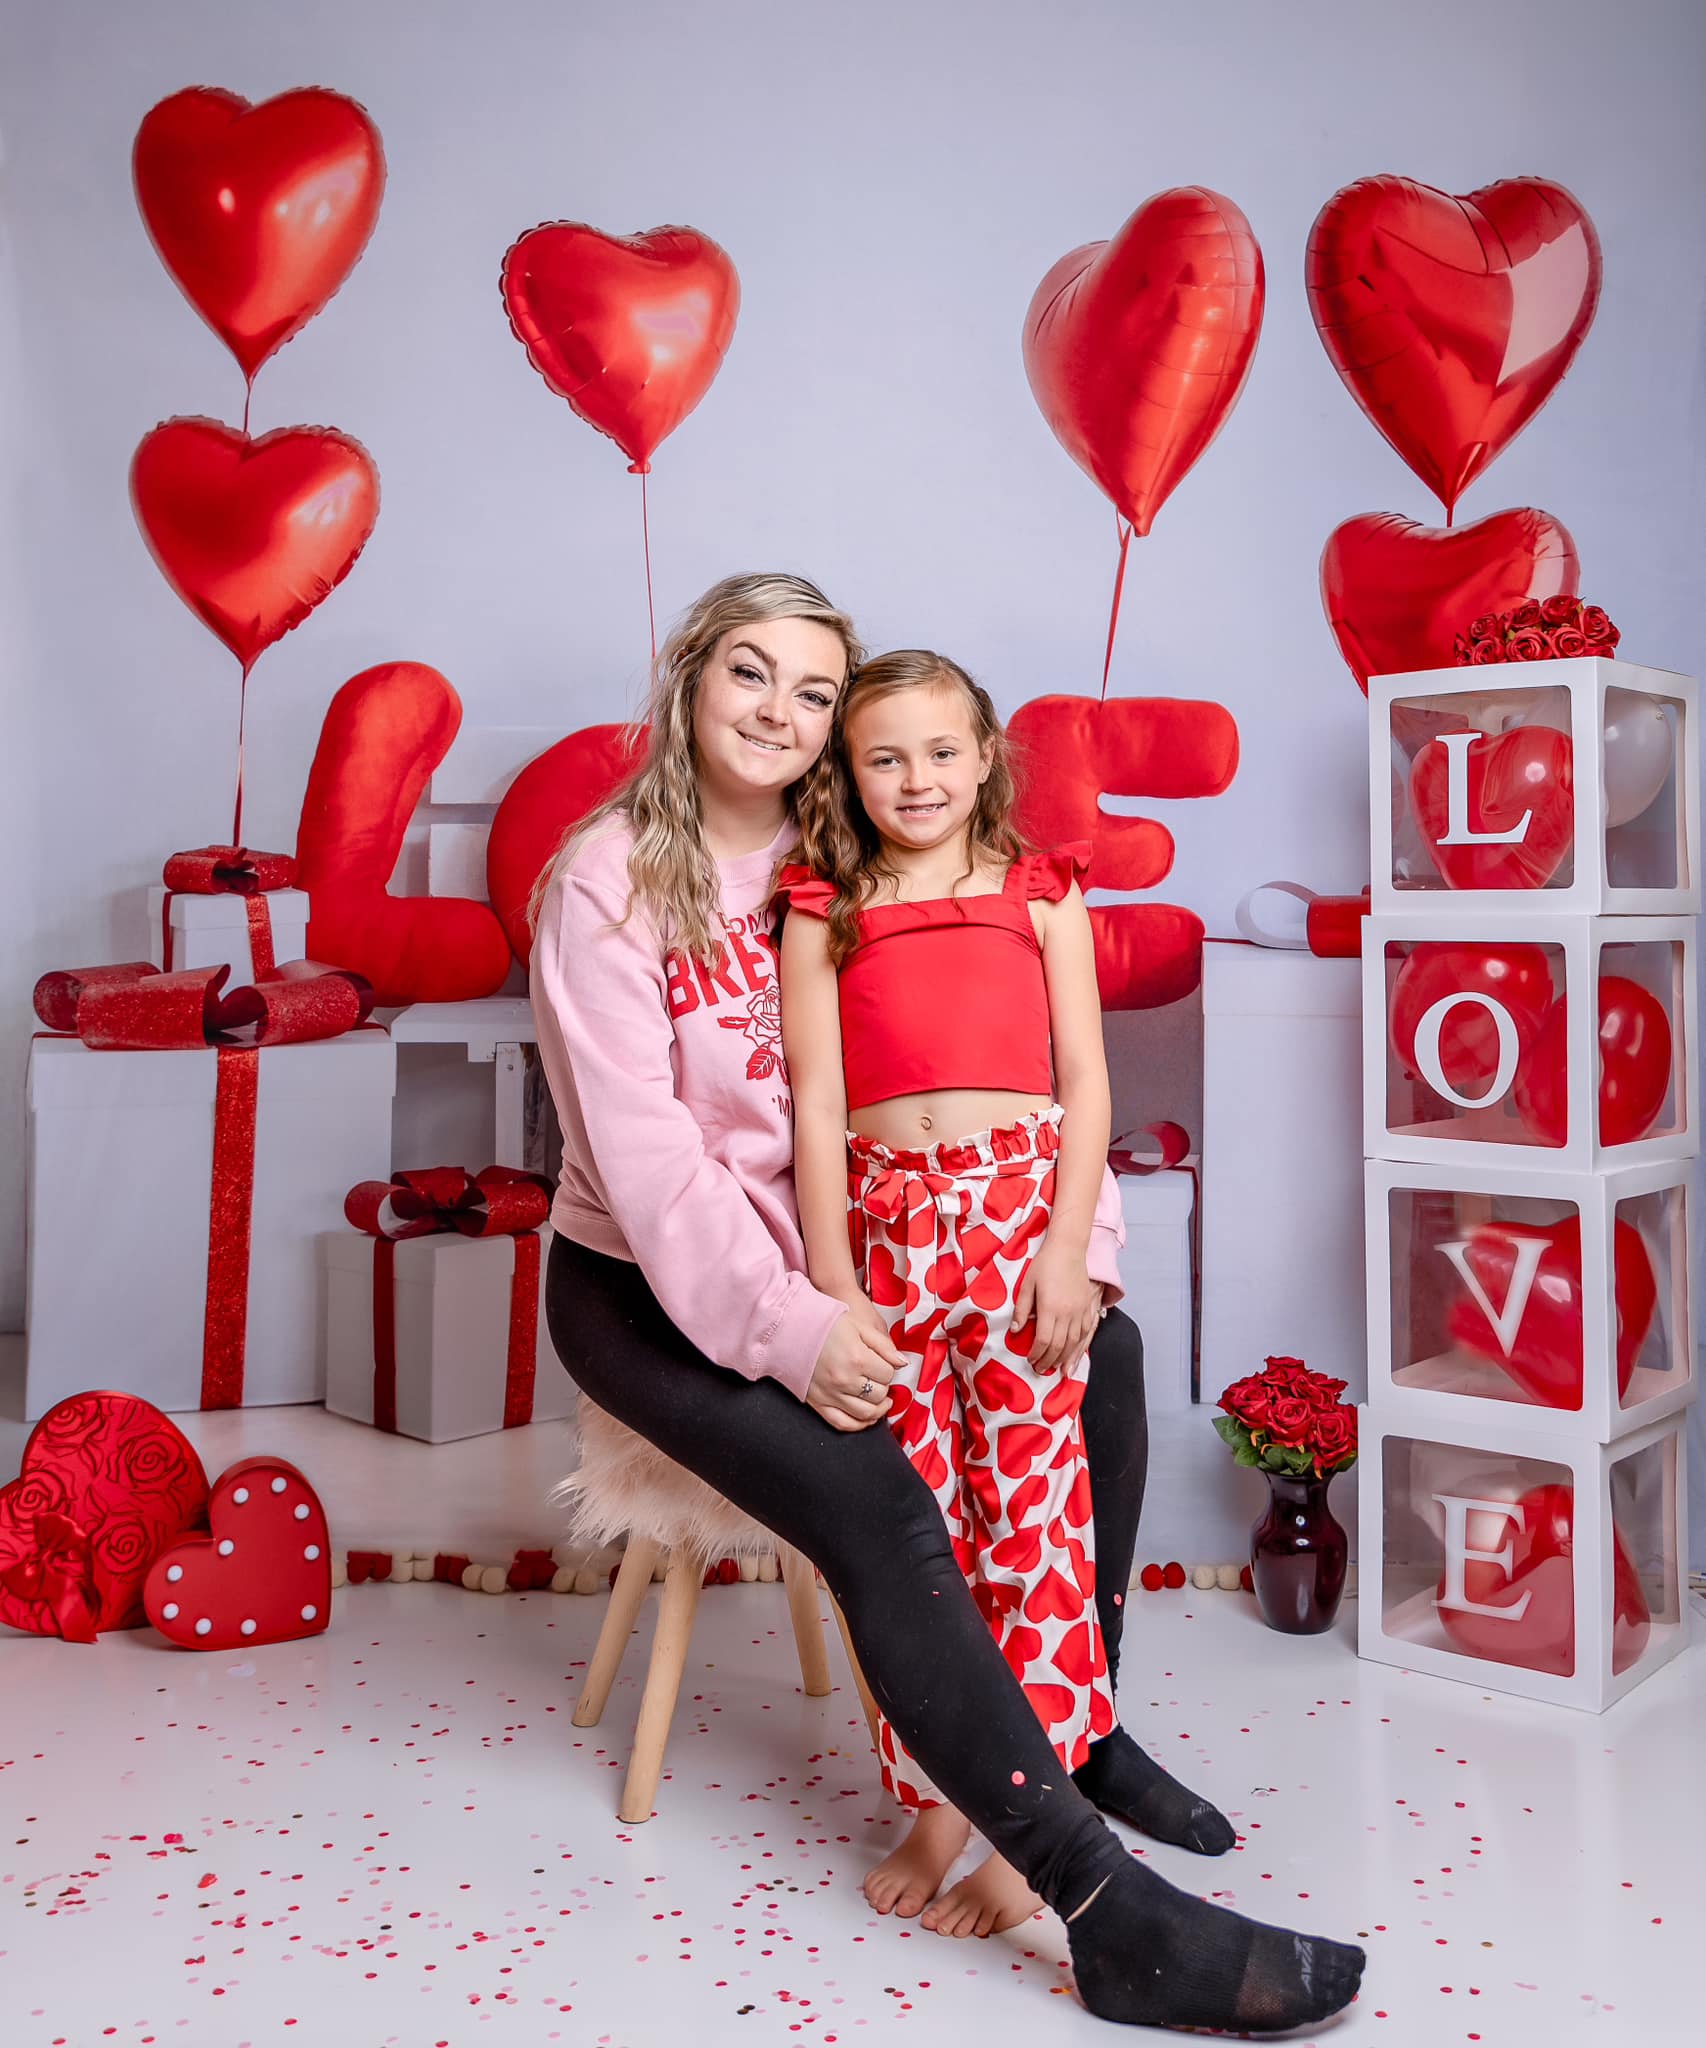 Kate Saint Valentin LOVE Ballons Cadeaux Toile de fond conçue par Emetselch